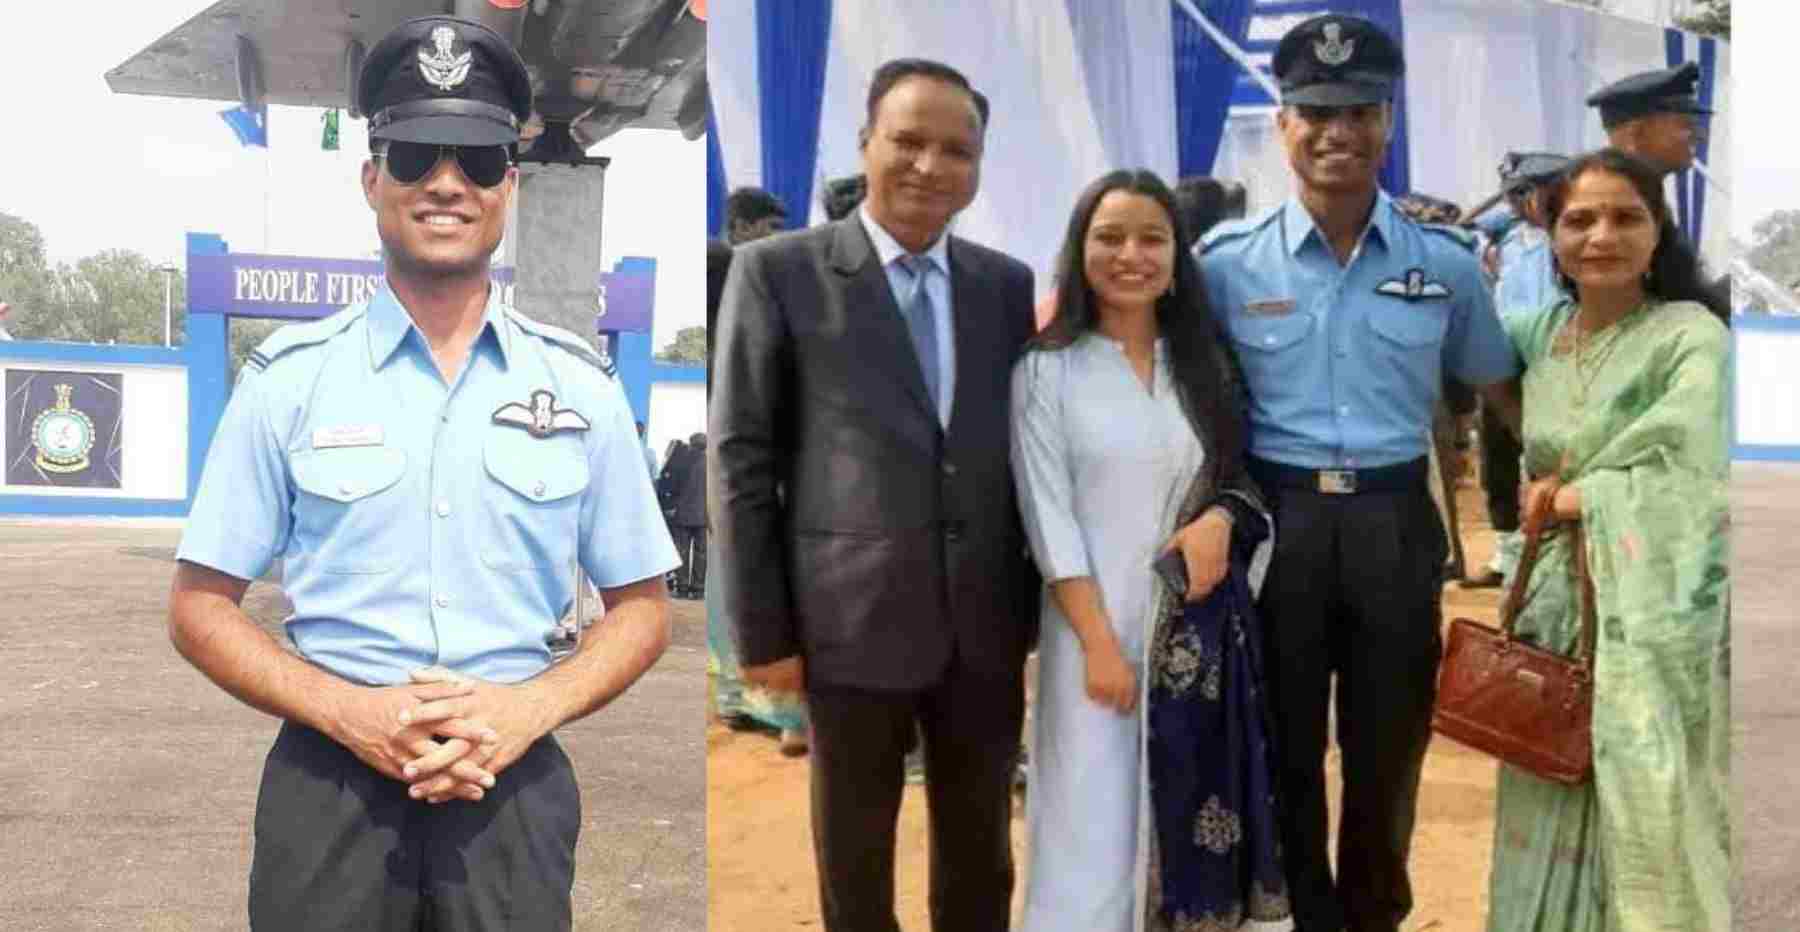 Uttarakhand news: Shivam kothari of tehri Garhwal become flying officer in Indian airforce